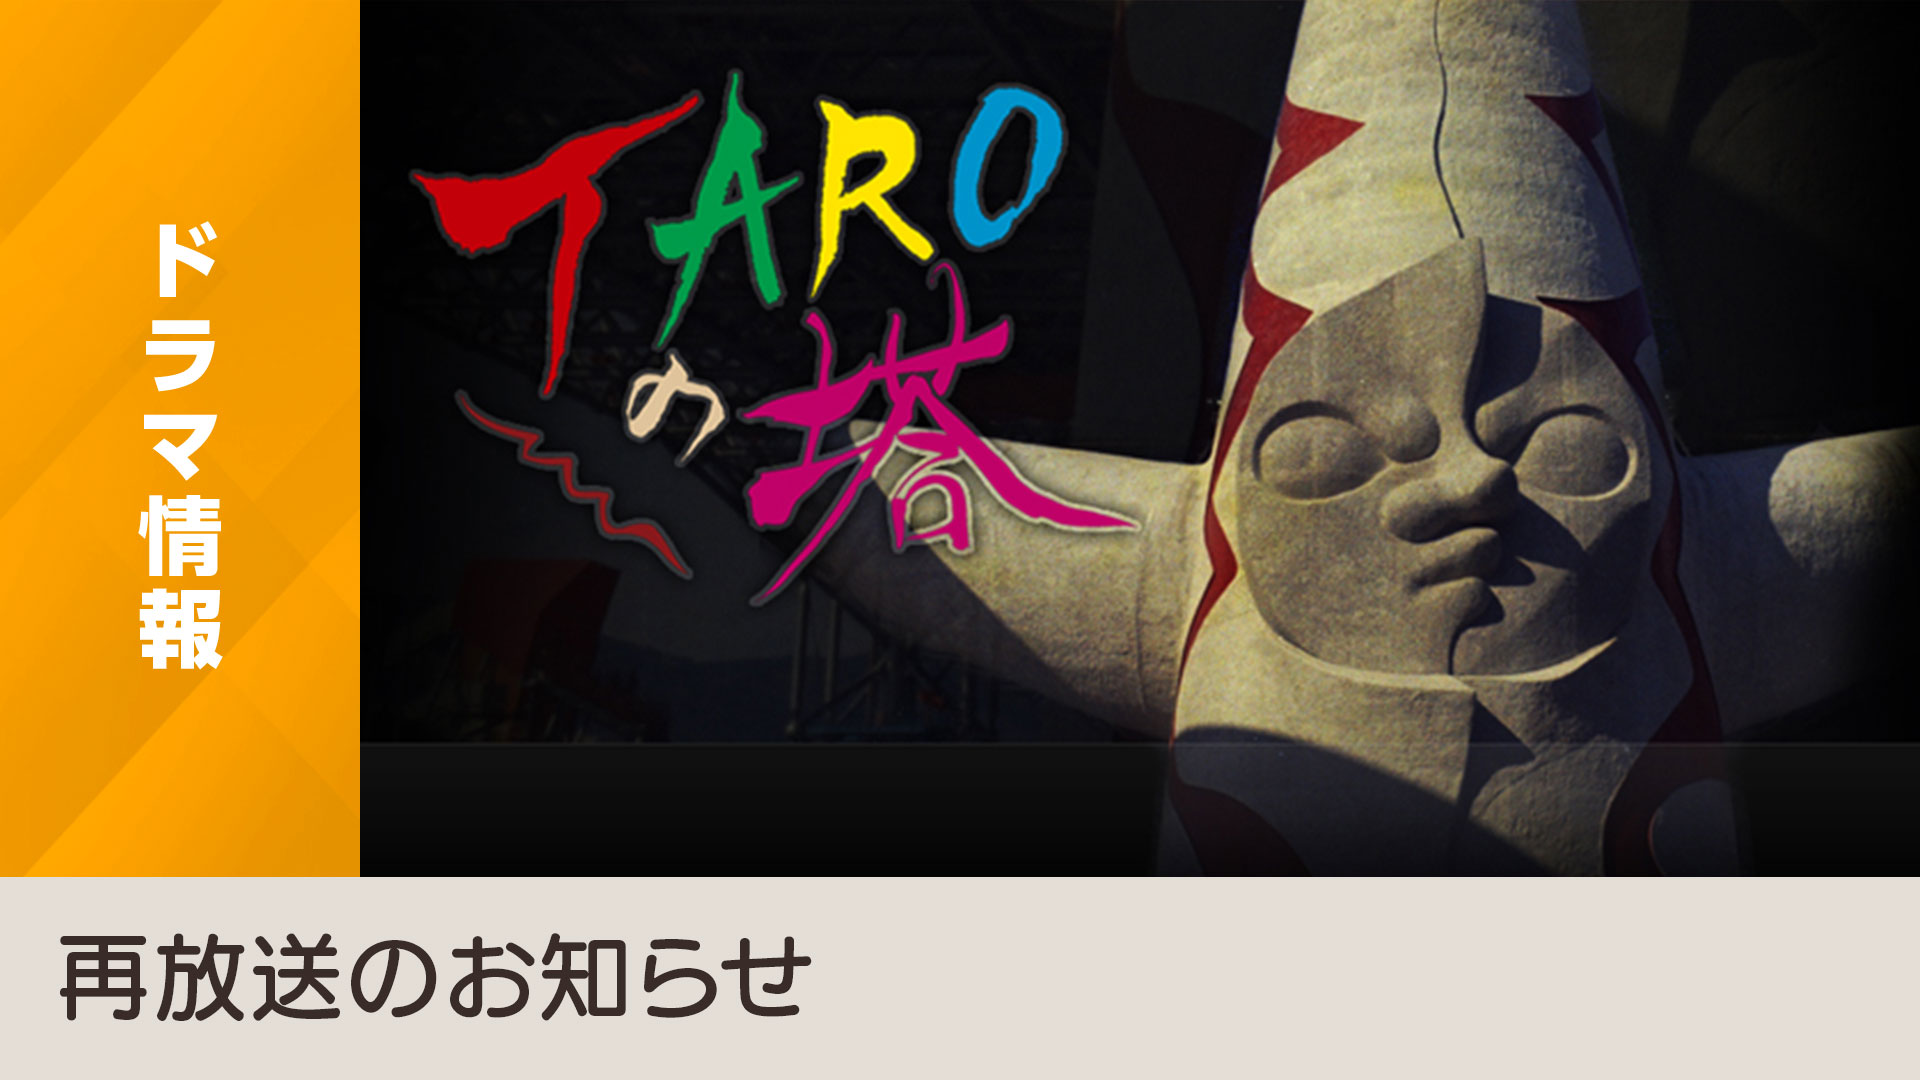 芸術家 岡本太郎の全貌を描いた Taroの塔 を総合テレビにて再放送 Nhk